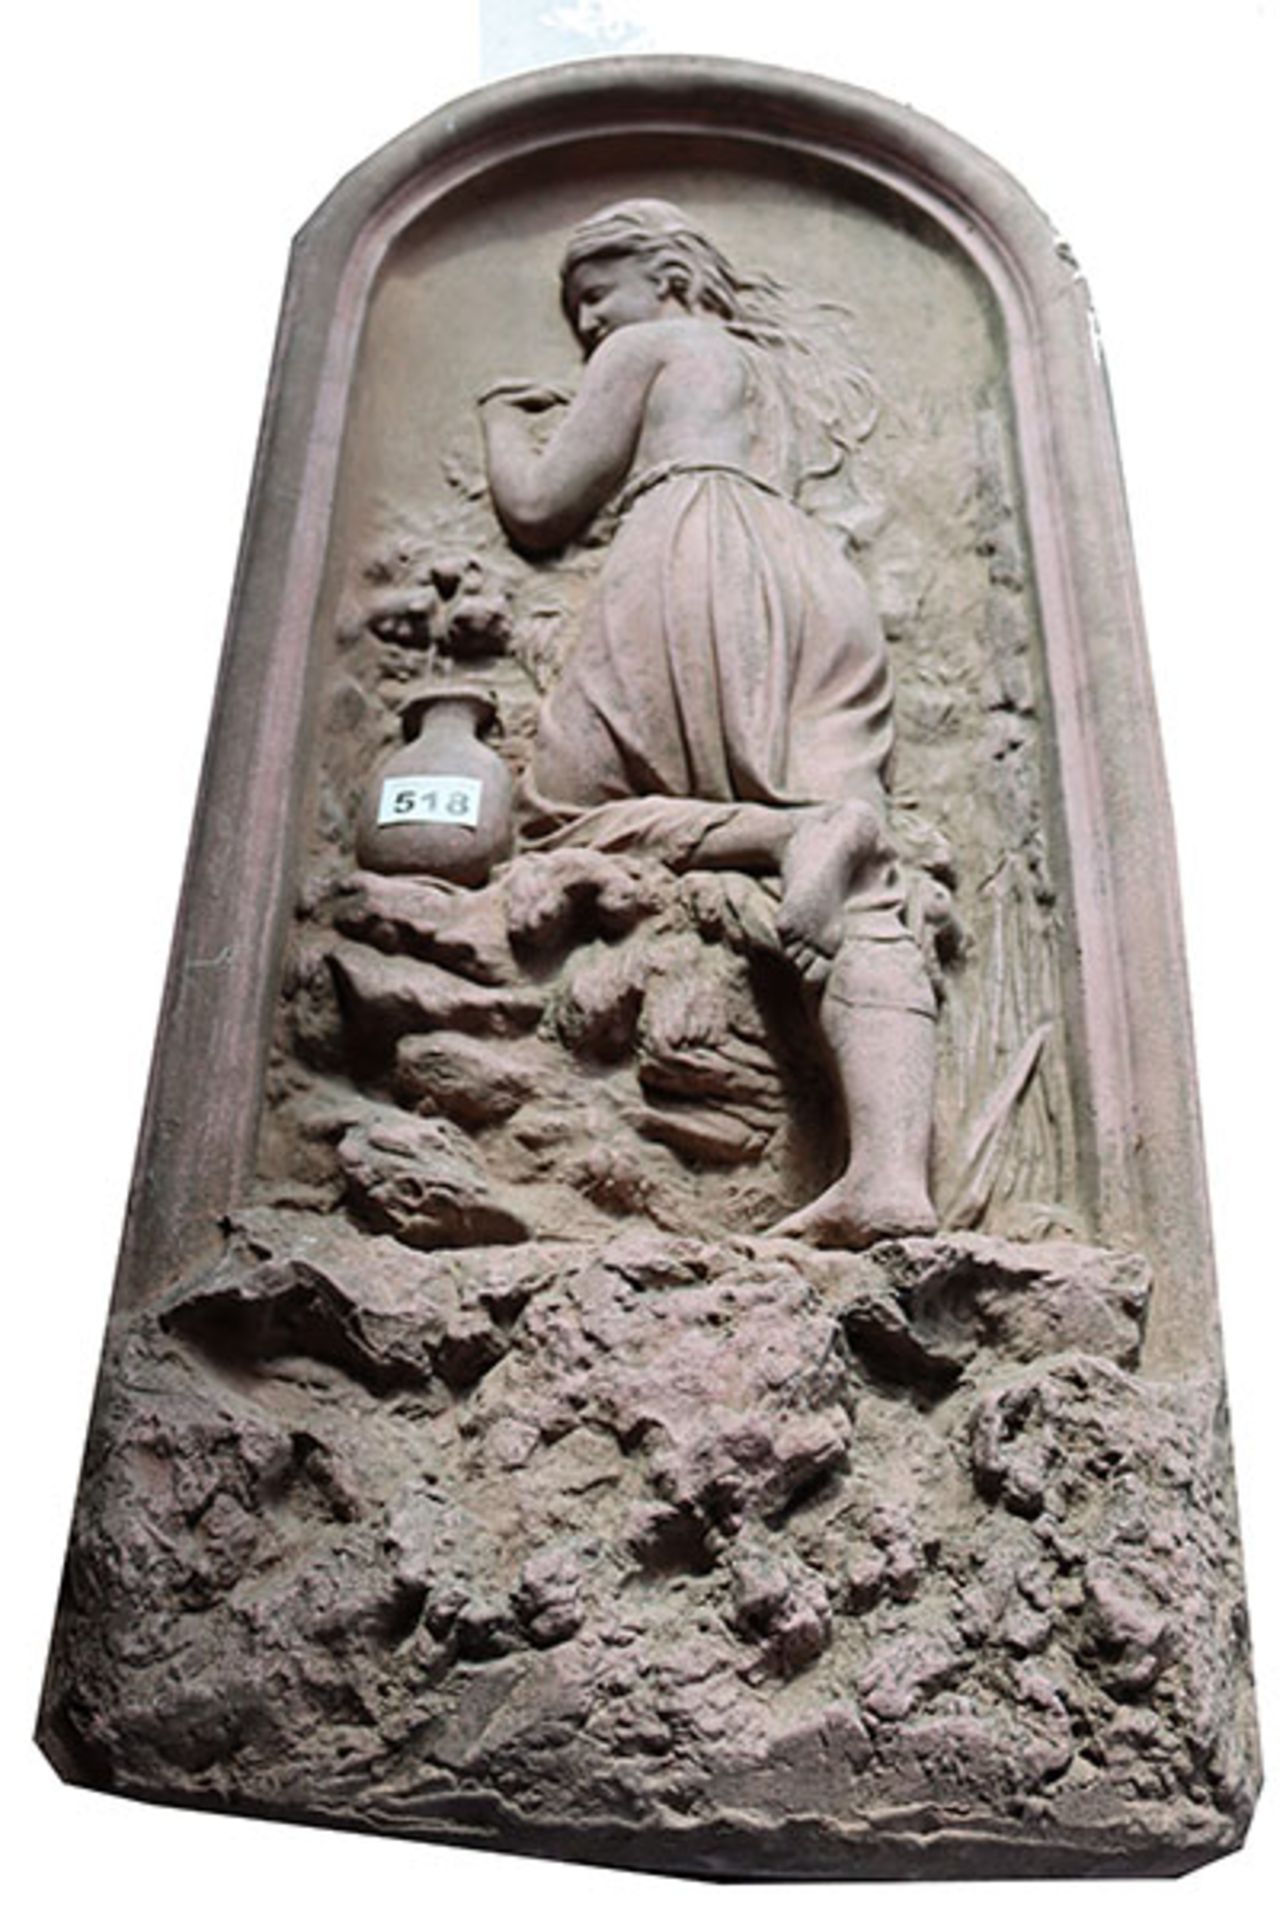 Steinrelief 'Mädchen am Brunnen', monogrammiert MW 86 ?, T 12 cm, 81 cm x 37 cm, Altersspuren, teils